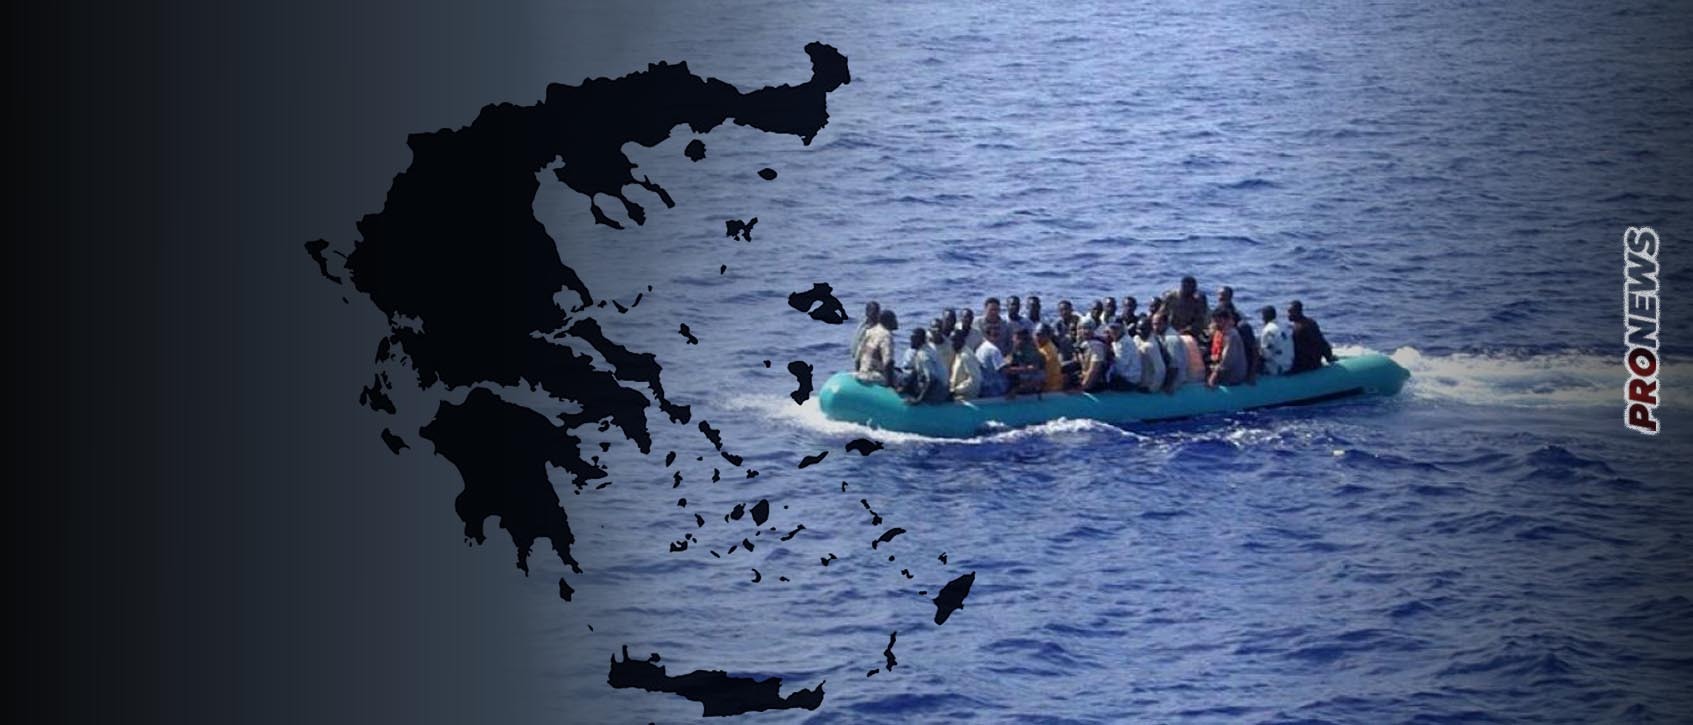 Παραδομένο το Α.Αιγαίο στους μουσουλμάνους εποίκους: Εκρηκτική άνοδος των λαθραίων μεταναστών  που φτάνουν στα νησιά